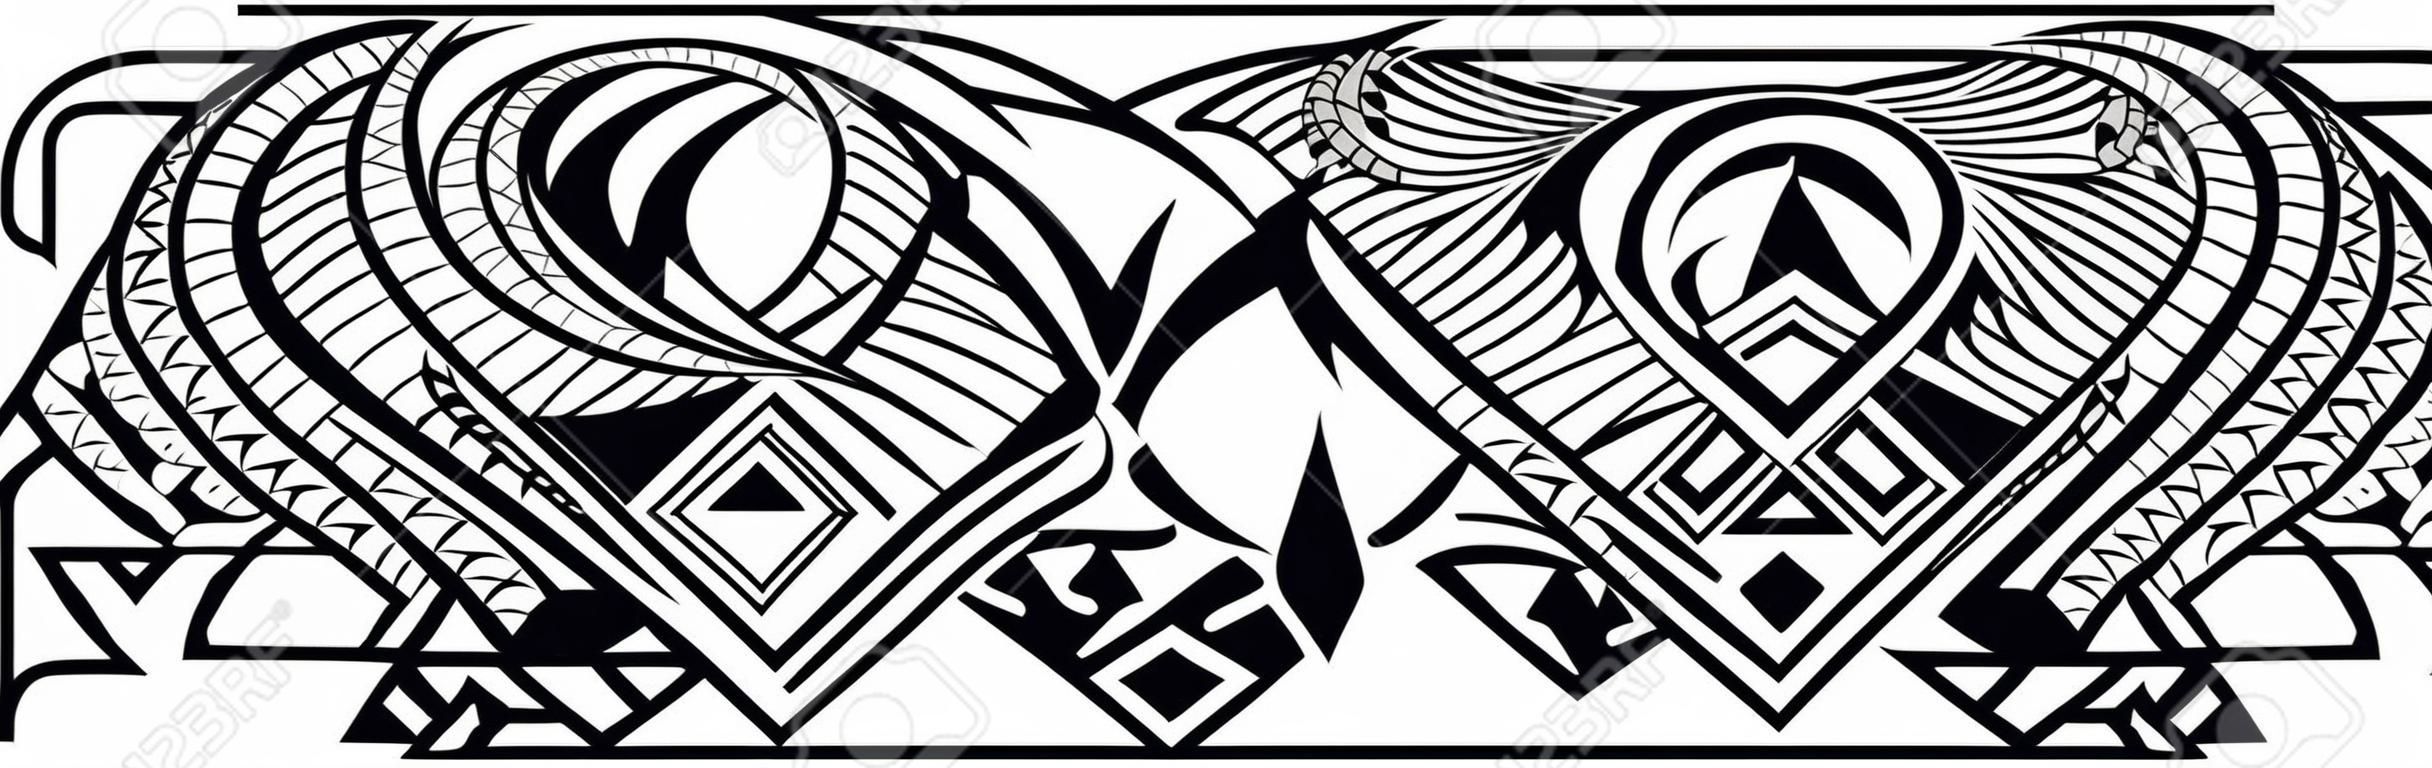 Motif de tatouage polynésien maori, bordure d'ornement samoa, vecteur de modèle tribal éthique.